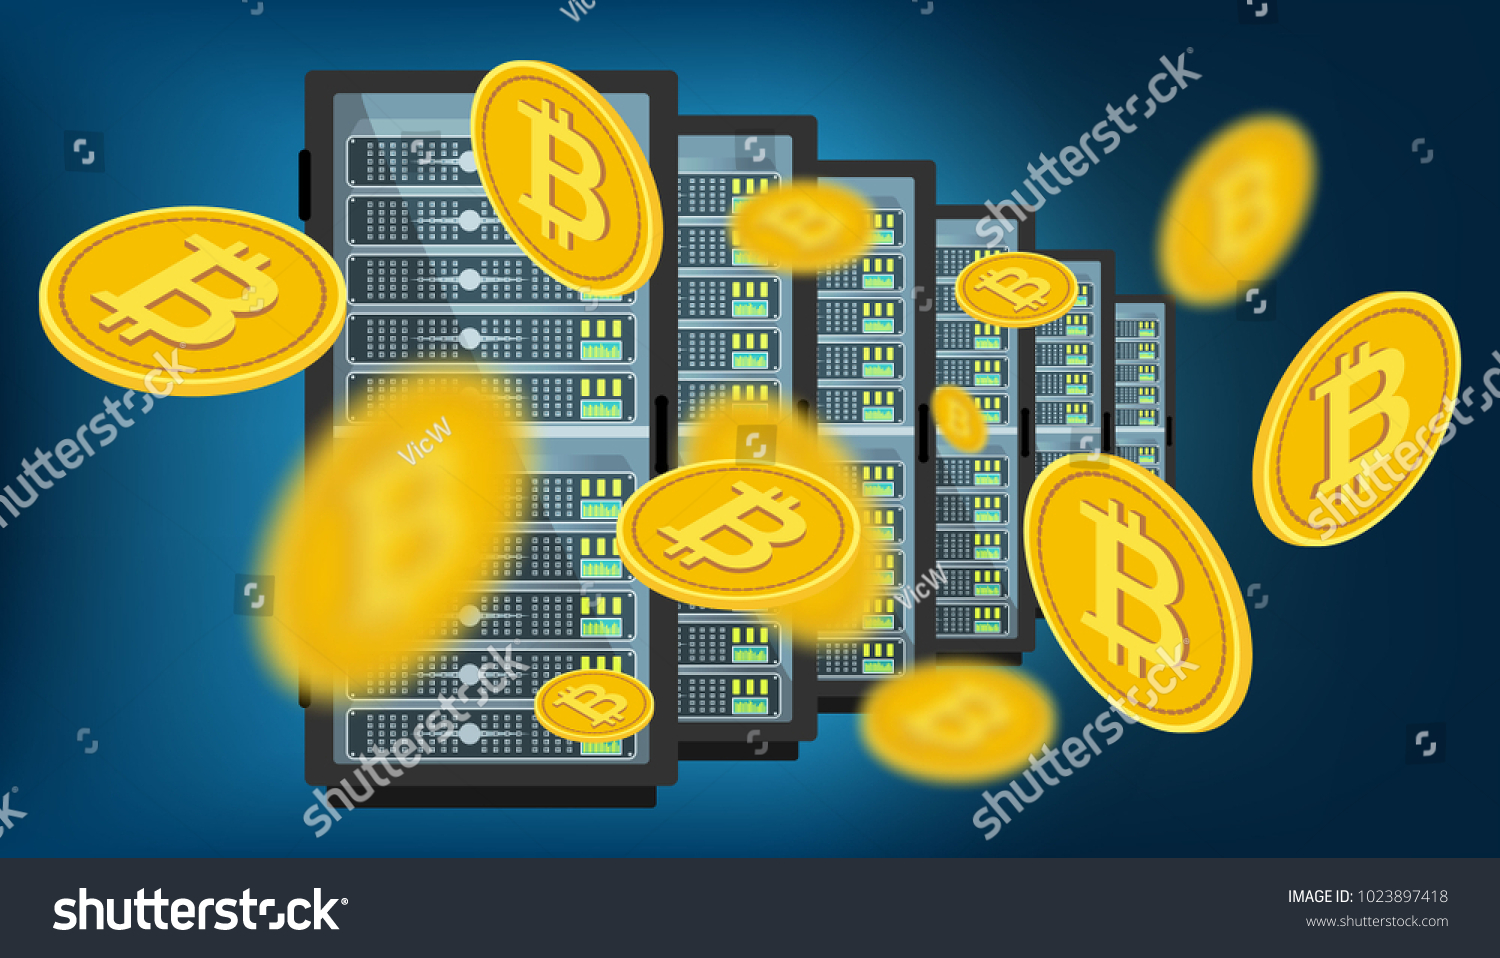 instantdex bitcointalk